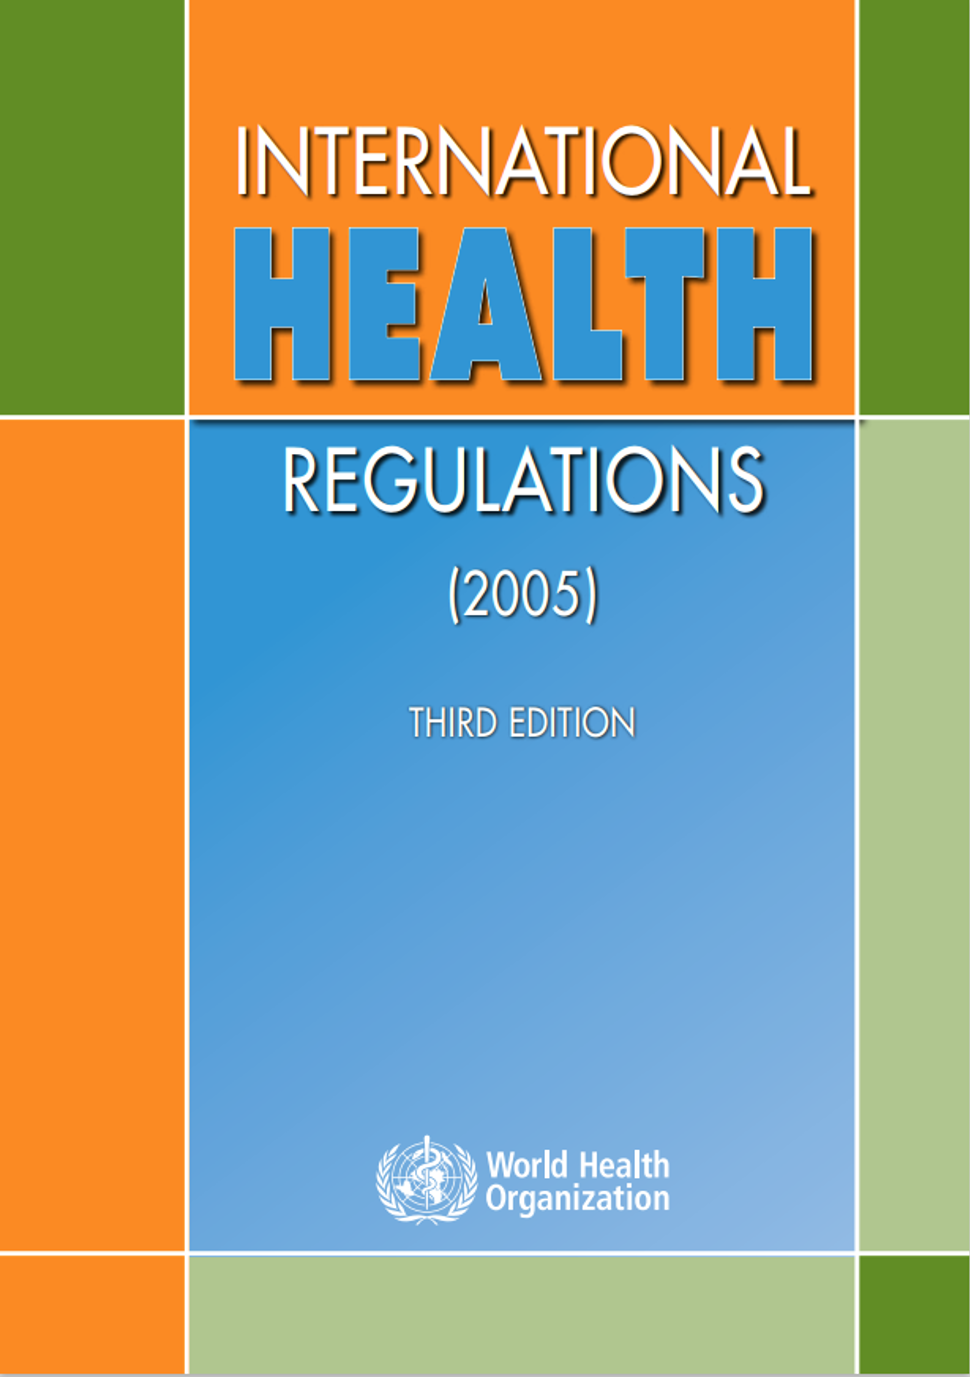 Bilde av forsiden til det internasjonale helsereglementet